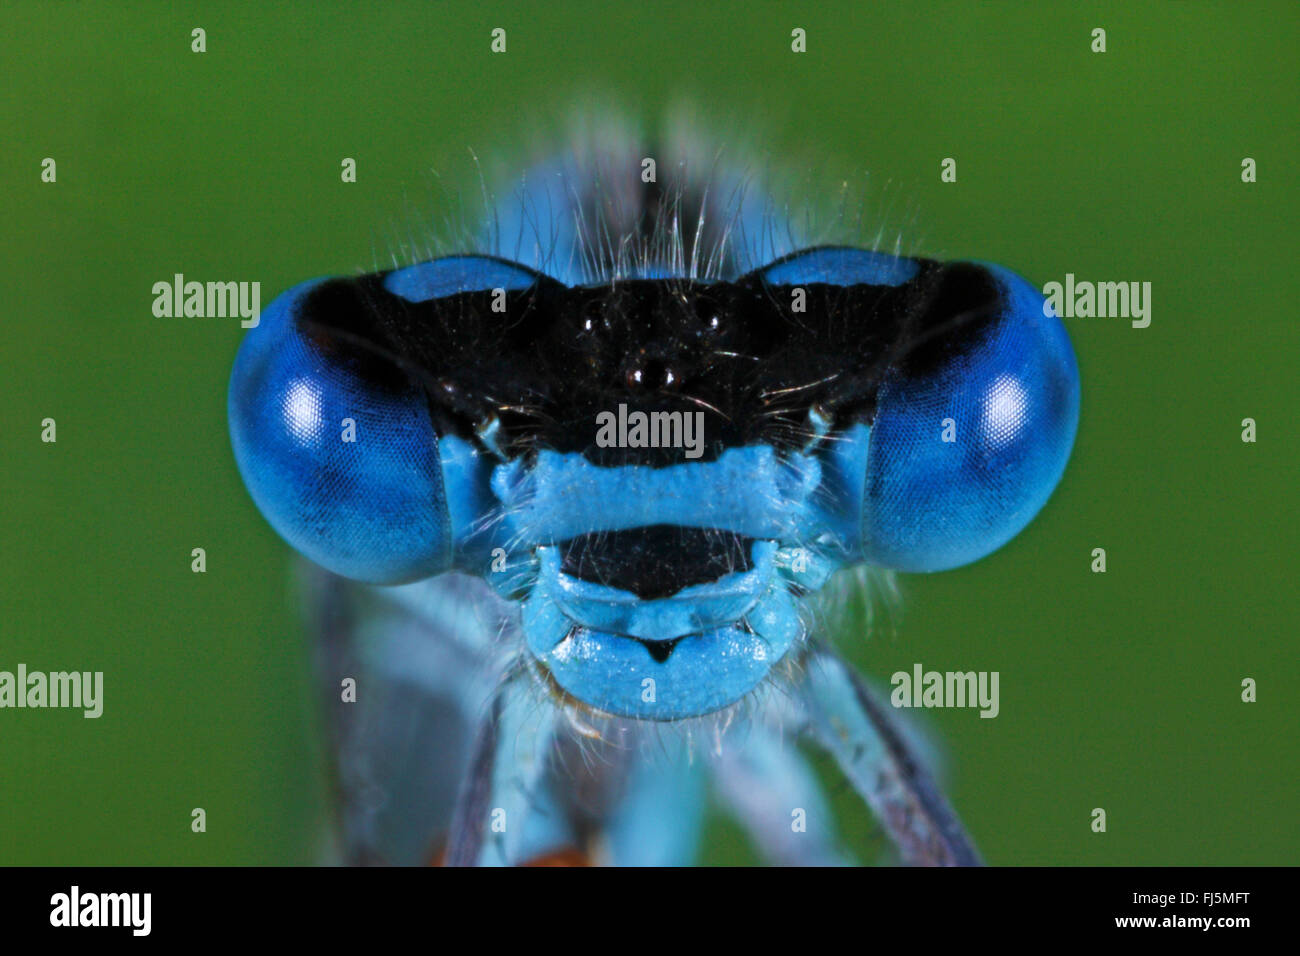 Common blue damselfly, Common bluet damselfly (Enallagma cyathigera, Enallagma cyathigerum), portrait, front view, Germany Stock Photo